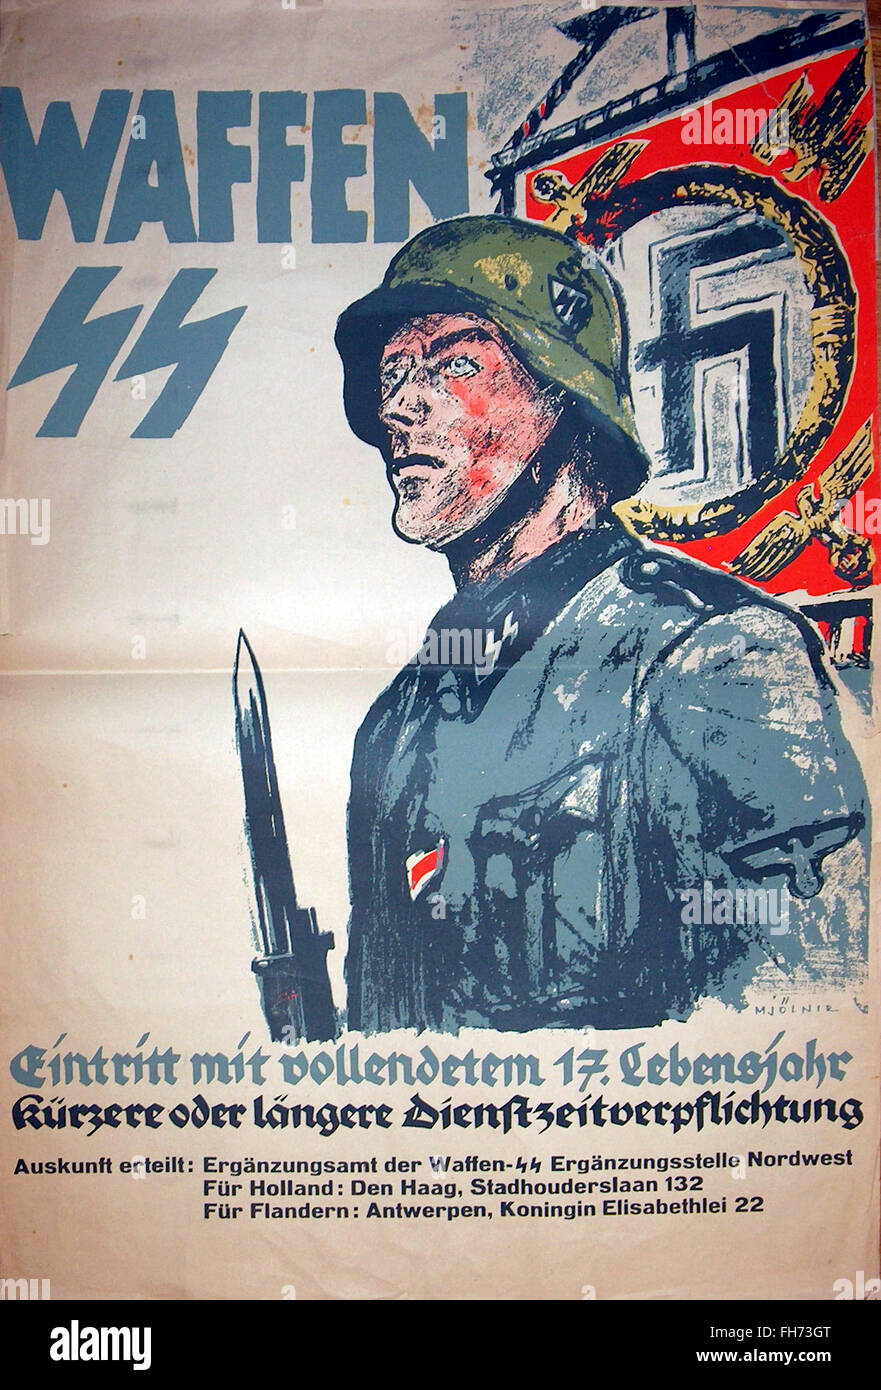 Waffen SS - German Nazi Propaganda Poster - WWII Stock 